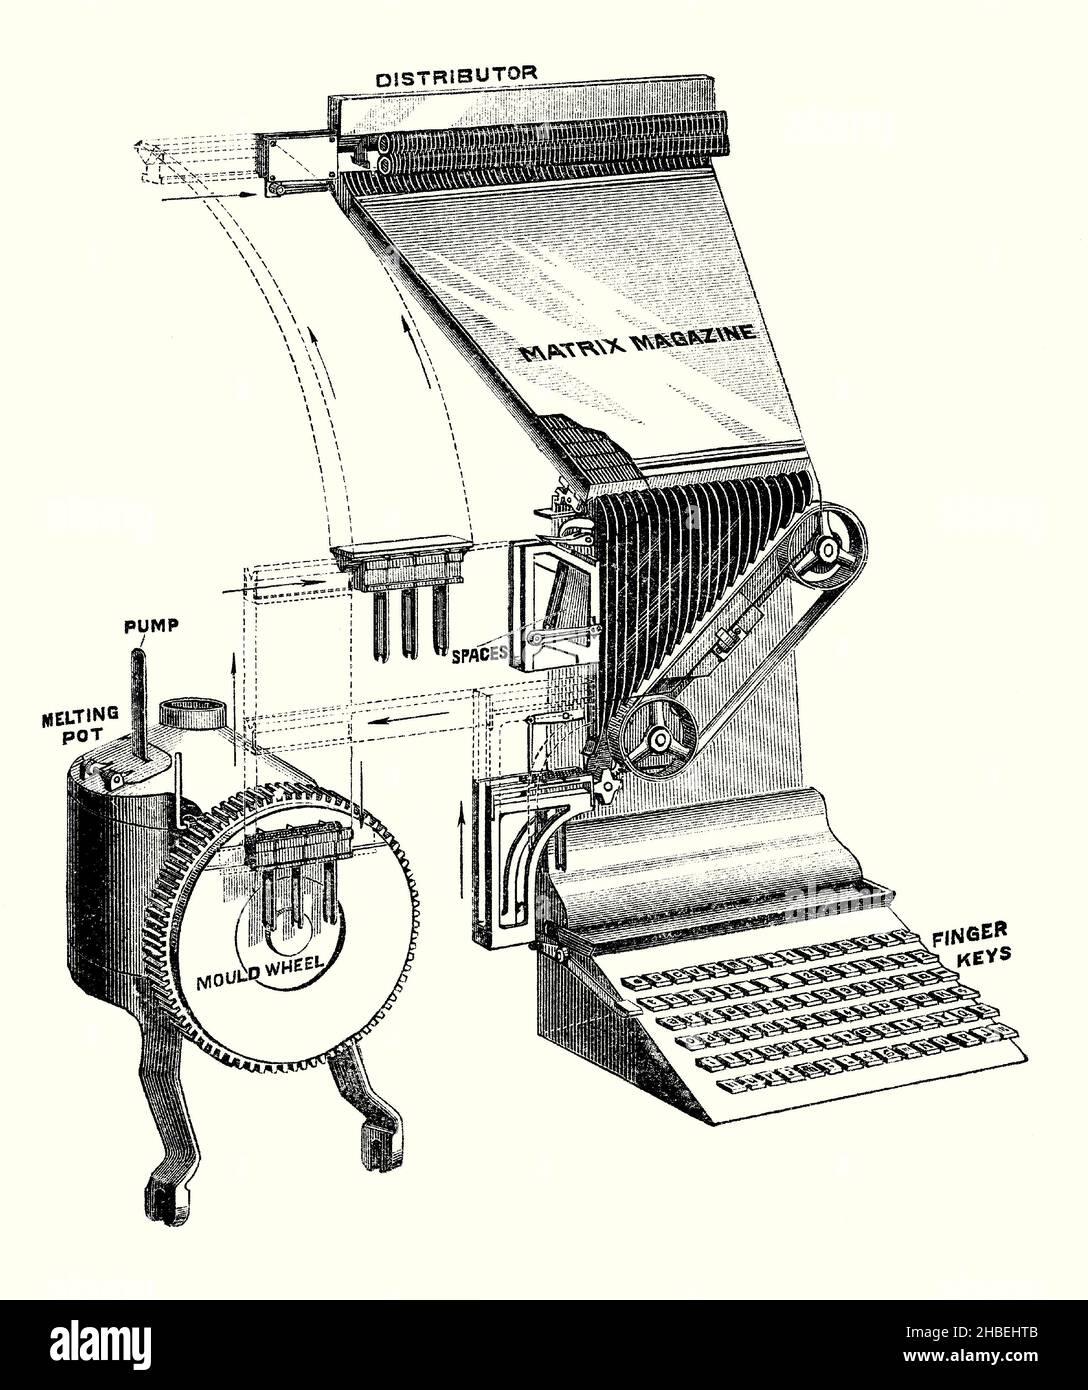 Une ancienne gravure montrant les principaux éléments mobiles d'une machine Linotype de la fin de 1800s.Il est tiré d'un livre victorien du 1890s sur les découvertes et les inventions pendant le 1800s.La machine Linotype est une machine de "transtypage" utilisée pour l'impression de texte.C'était un système de composition en métal chaud qui coulait des blocs de type métal pour des utilisations individuelles.Ottmar Mergenthaler l'a inventé en 1884.Linotype est devenu la principale méthode pour définir le type, en particulier le corps de texte de petite taille, pour les journaux, les magazines et les livres de la fin du 19th siècle aux 1970s et 1980s. Banque D'Images